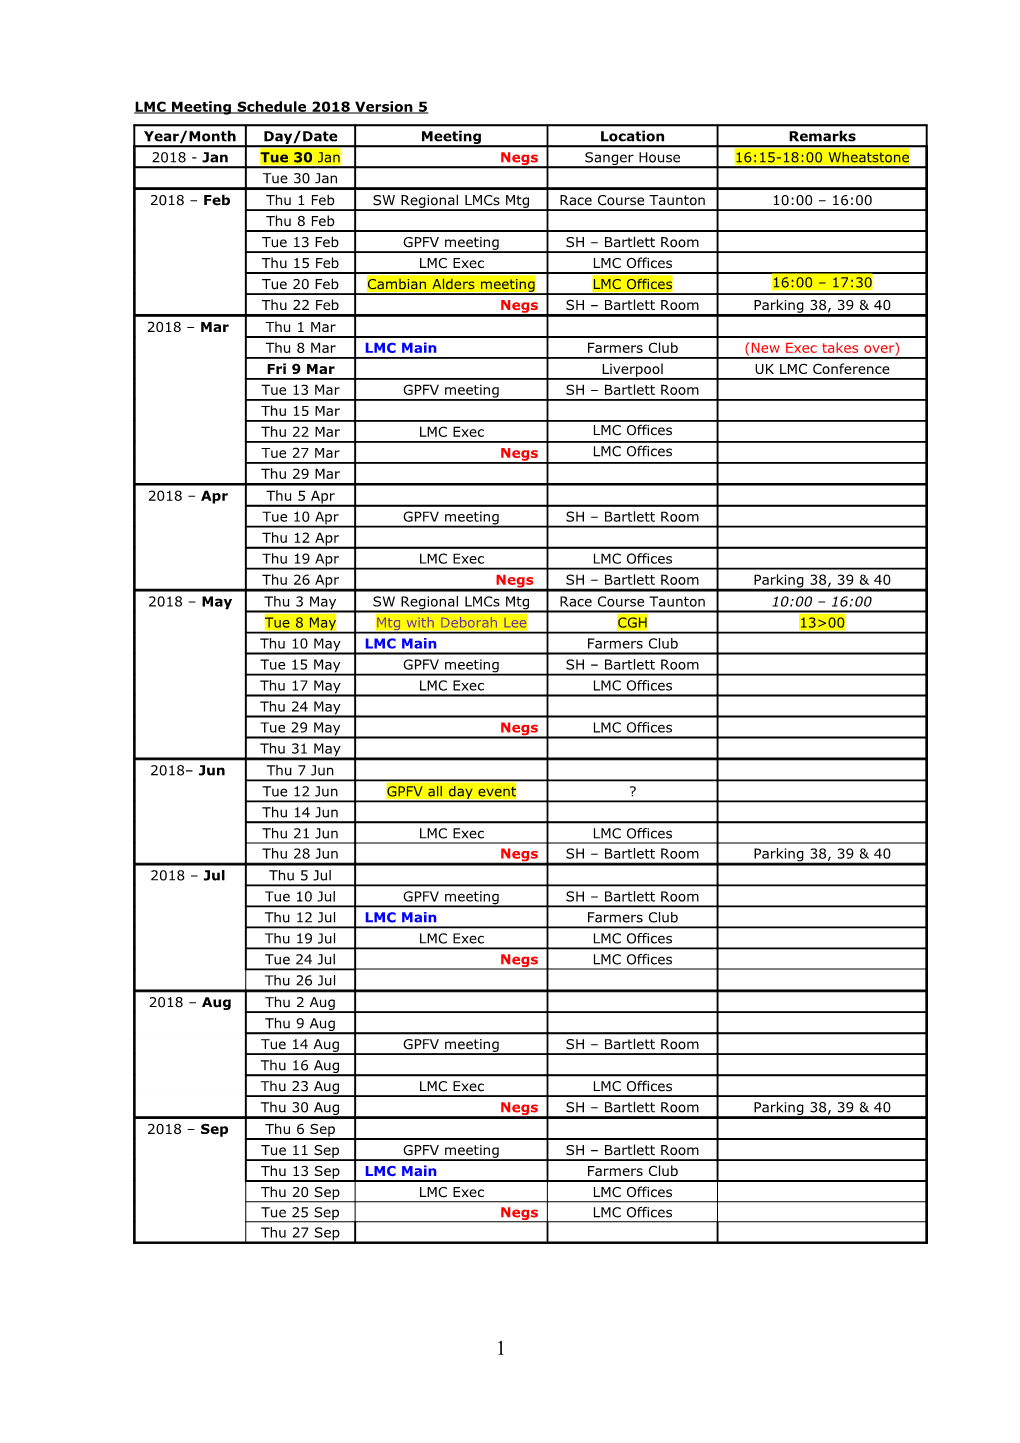 LMC Meeting Schedule 2012